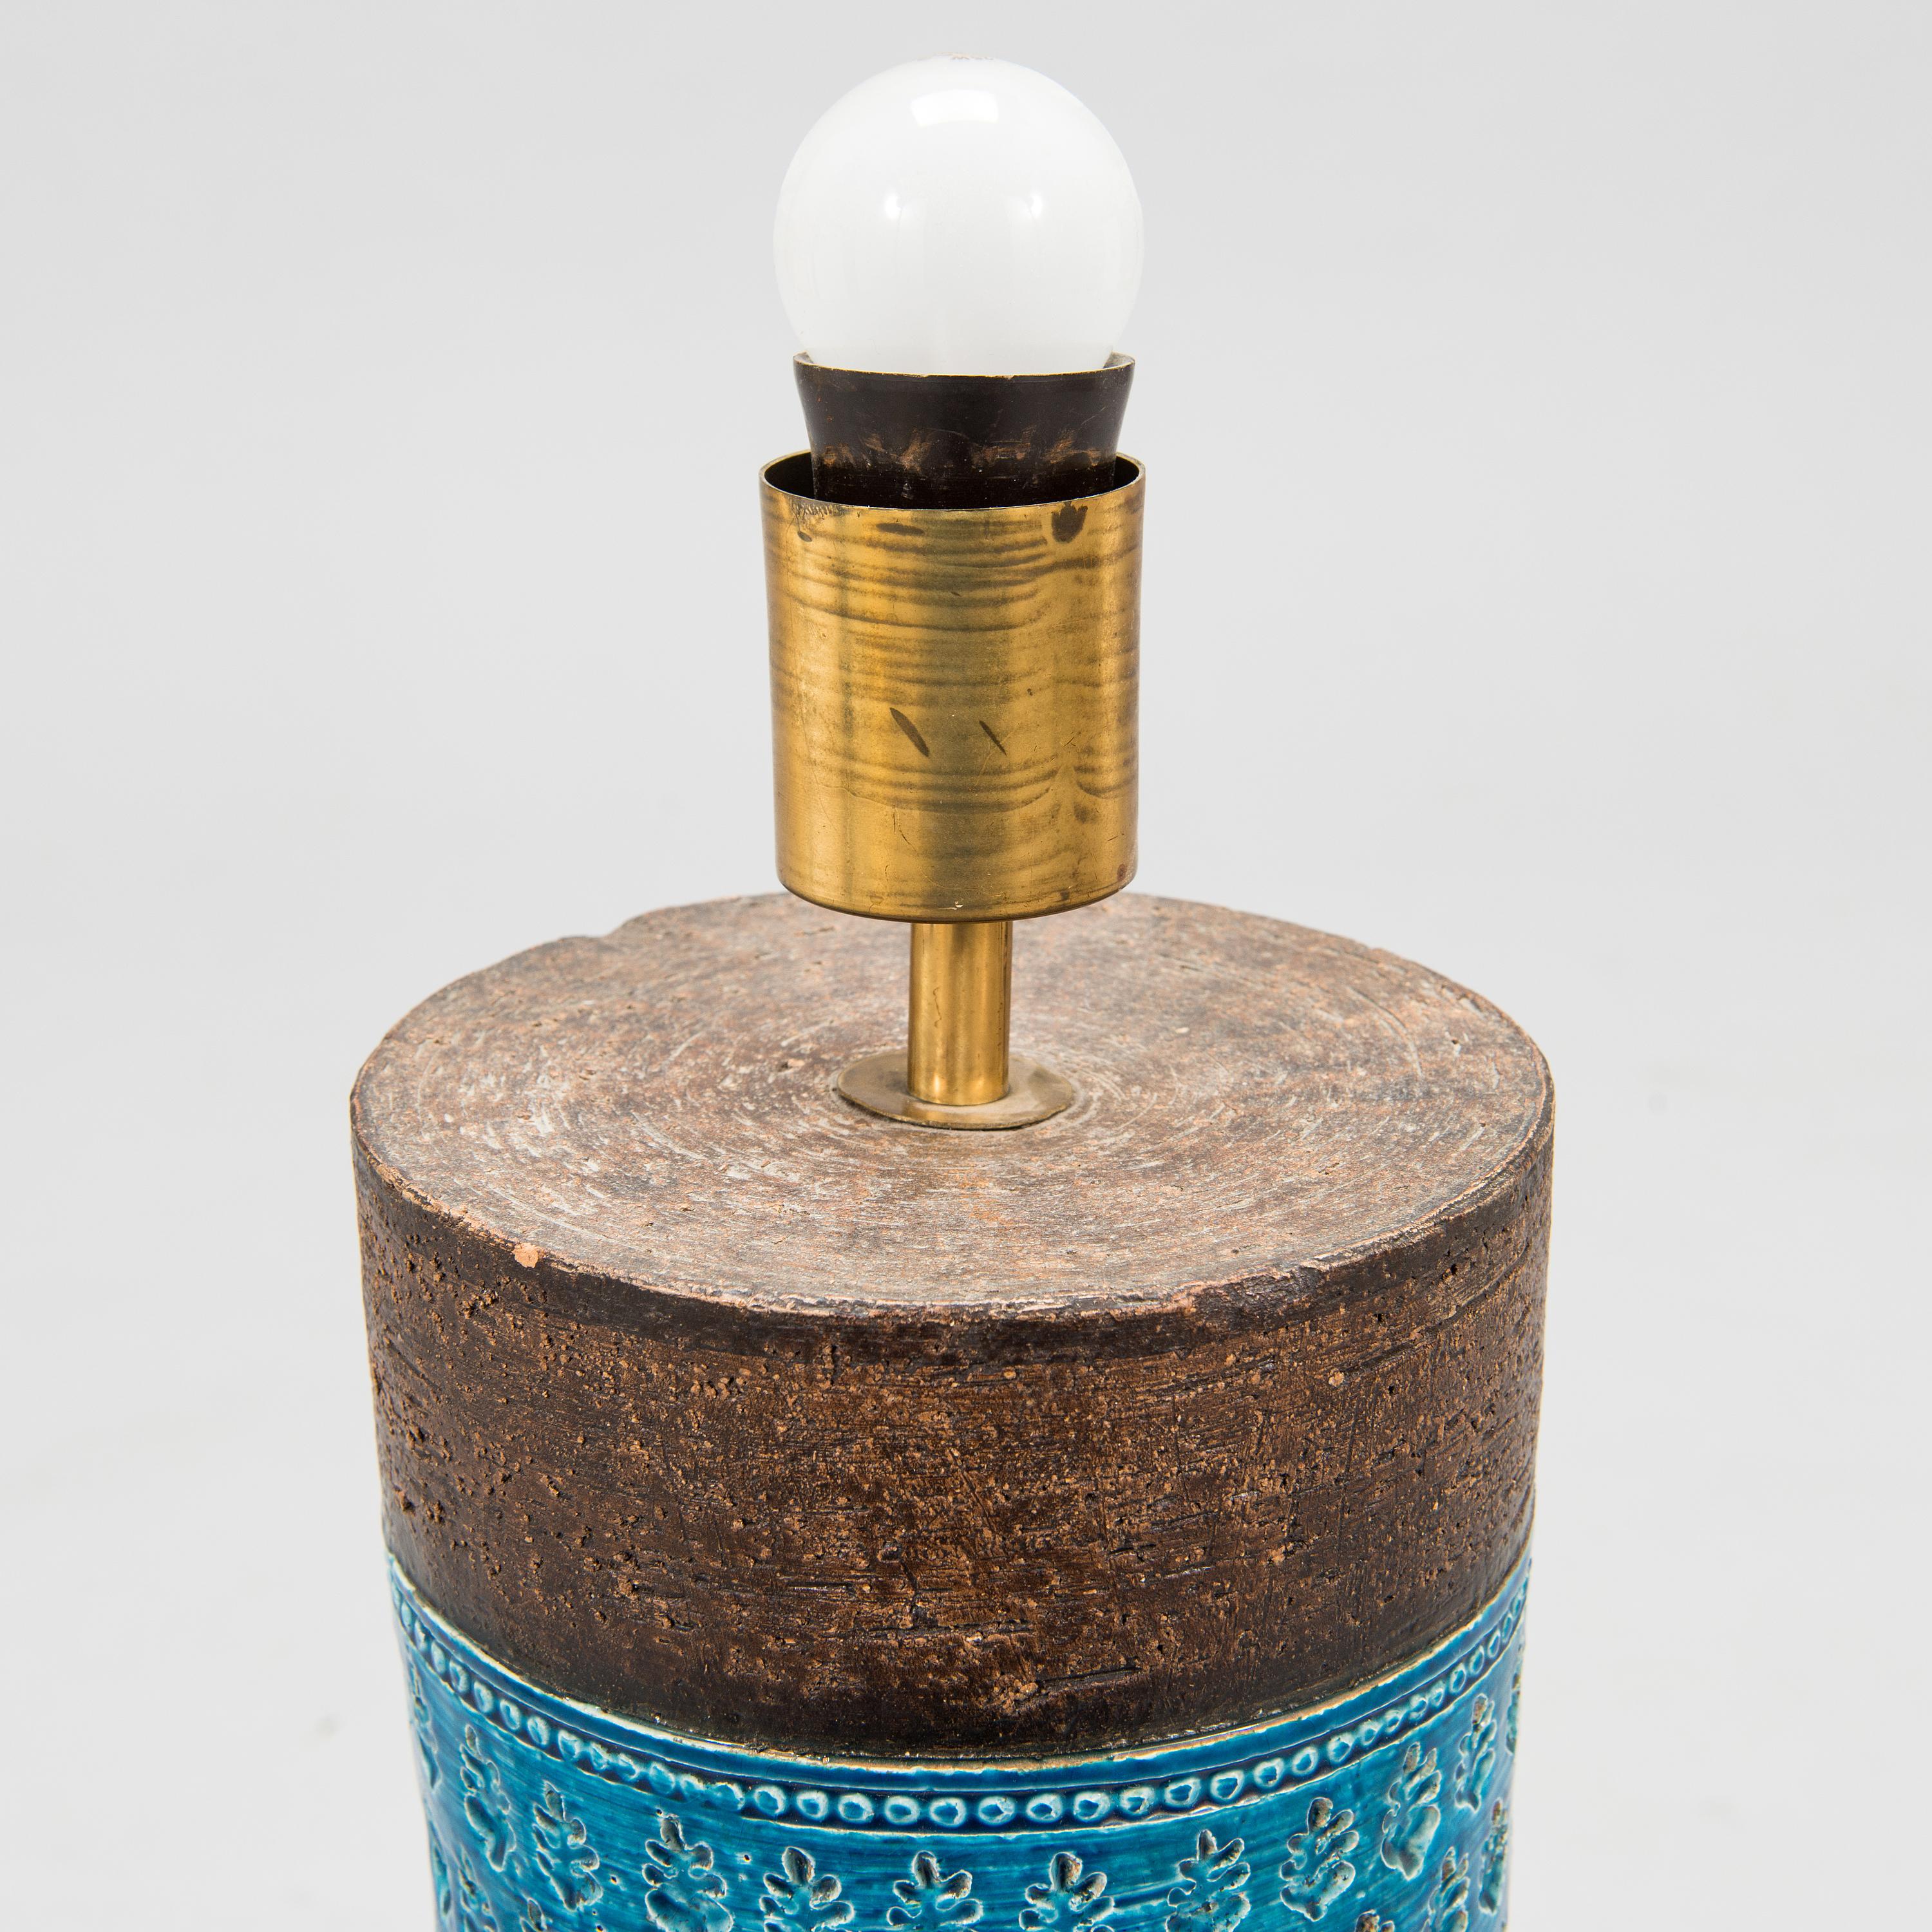 Table Aldo Londi  Lampe pour Bitossi  céramique avec émail turquoise fabriqué en  Italie vers 1960
Hauteur du corps en céramique, douille incluse : 54 cm. Hauteur totale 87 cm ; Diamètre de l'abat-jour 41 cm.
Bon état